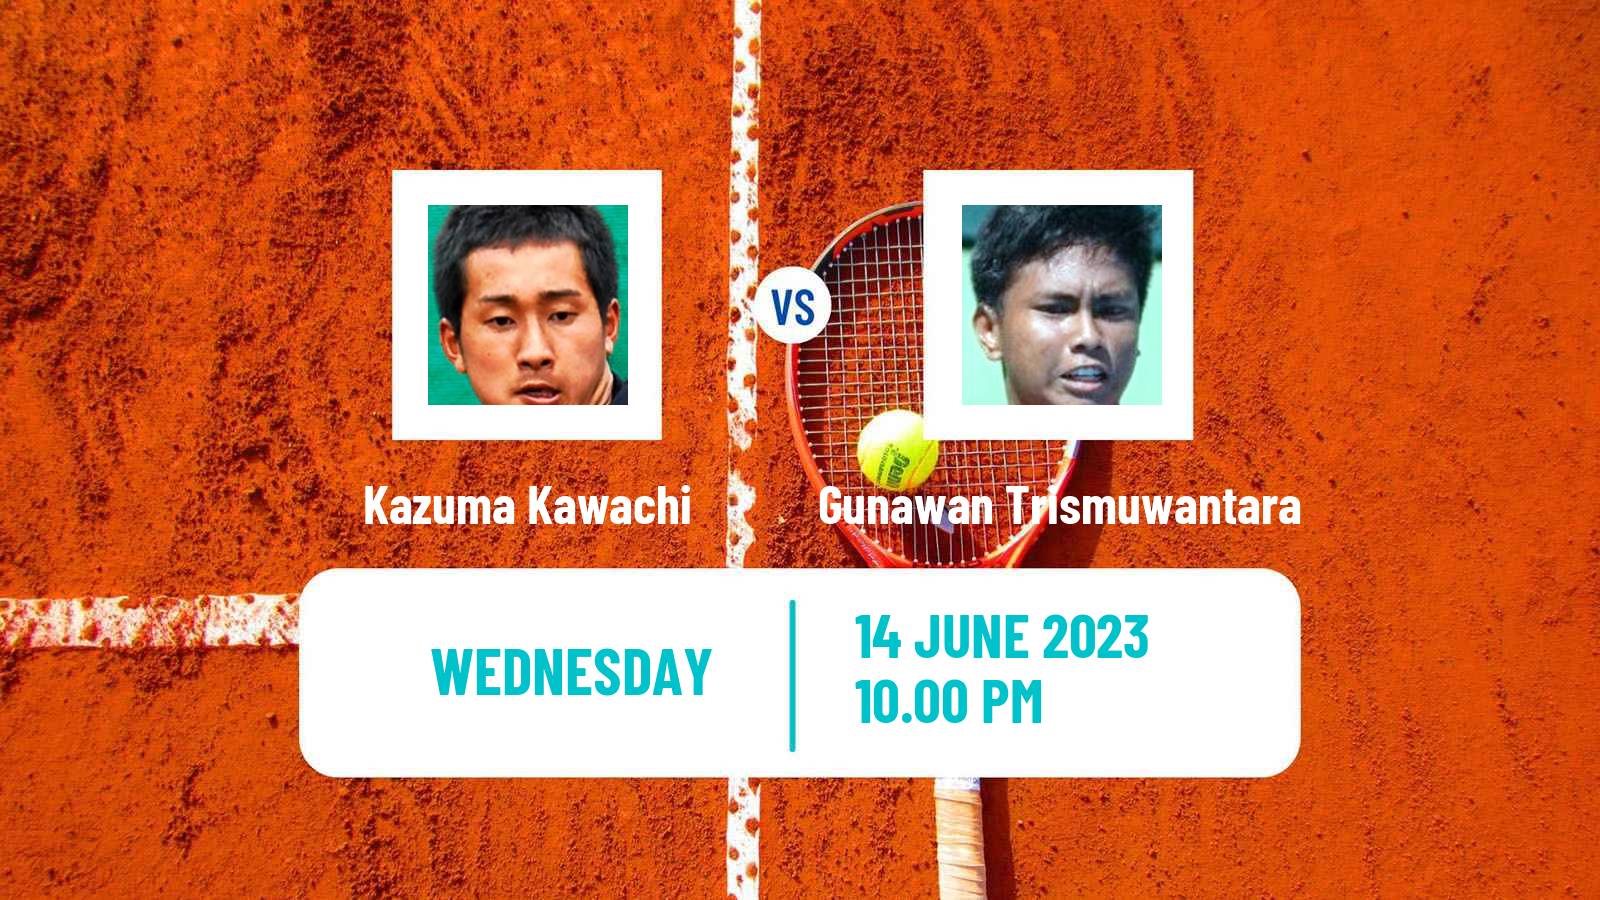 Tennis ITF M15 Jakarta 3 Men Kazuma Kawachi - Gunawan Trismuwantara